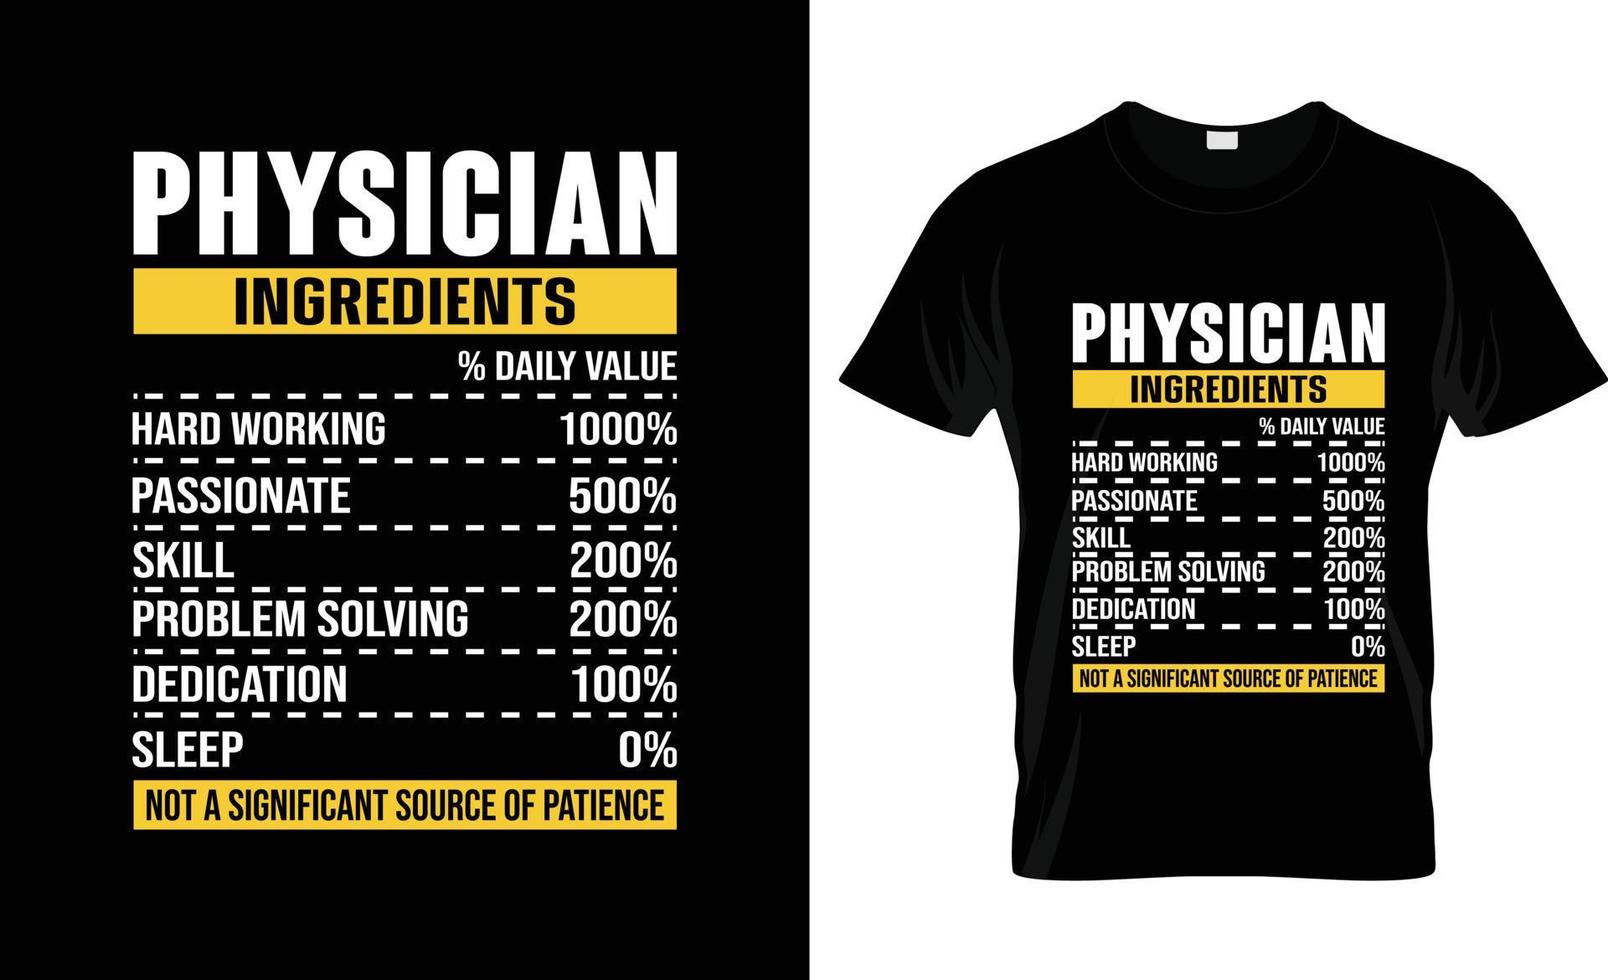 läkare t-shirt design, läkare t-shirt slogan och kläder design, läkare typografi, läkare vektor, läkare illustration vektor